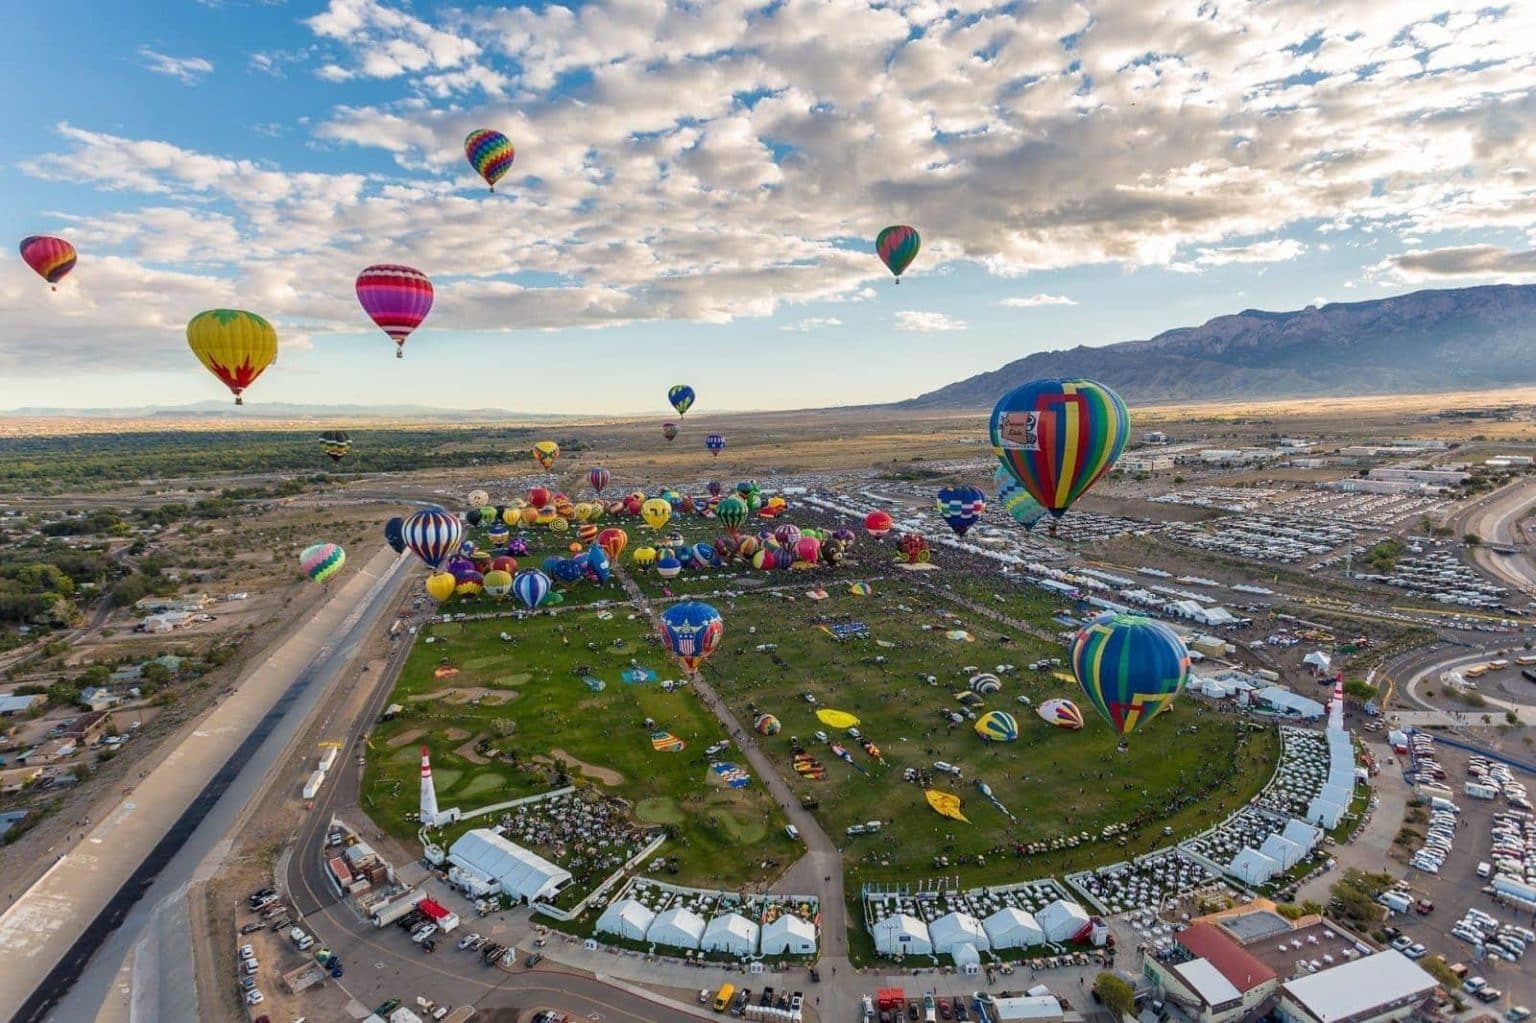 26 Photos From The Albuquerque International Balloon Fiesta Finding